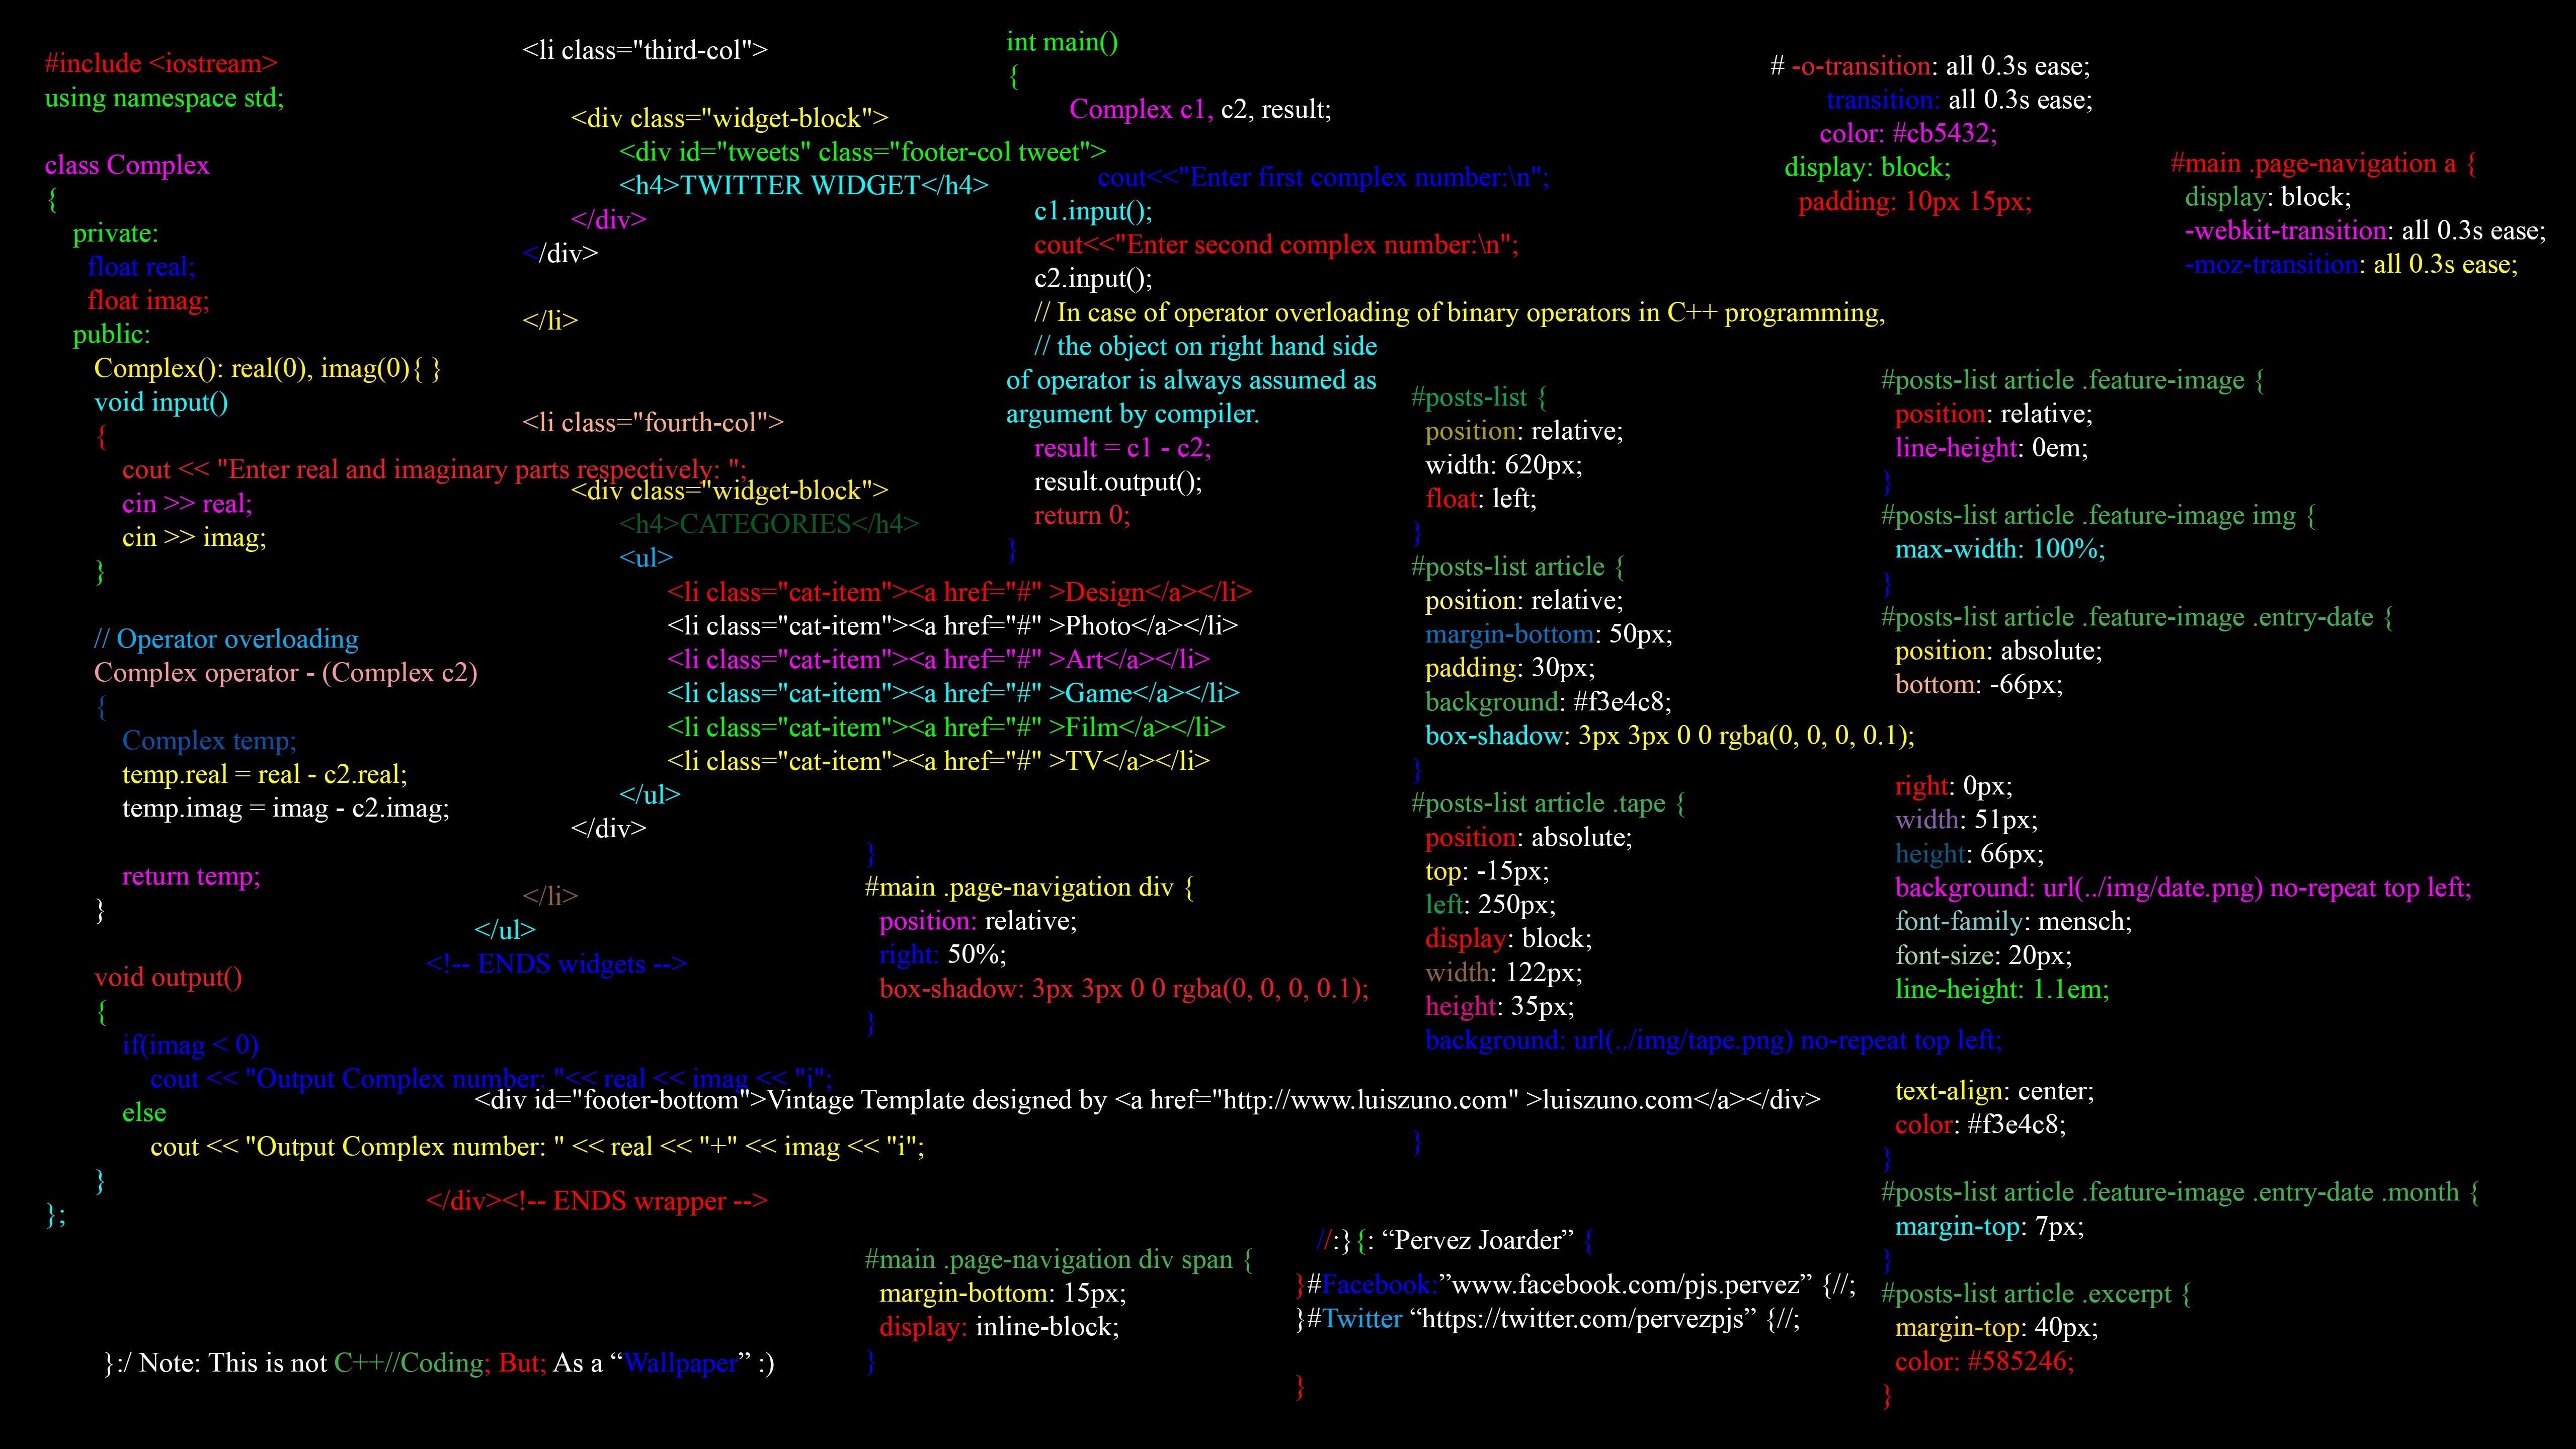 Java Programming language (coding) 2K wallpaper download